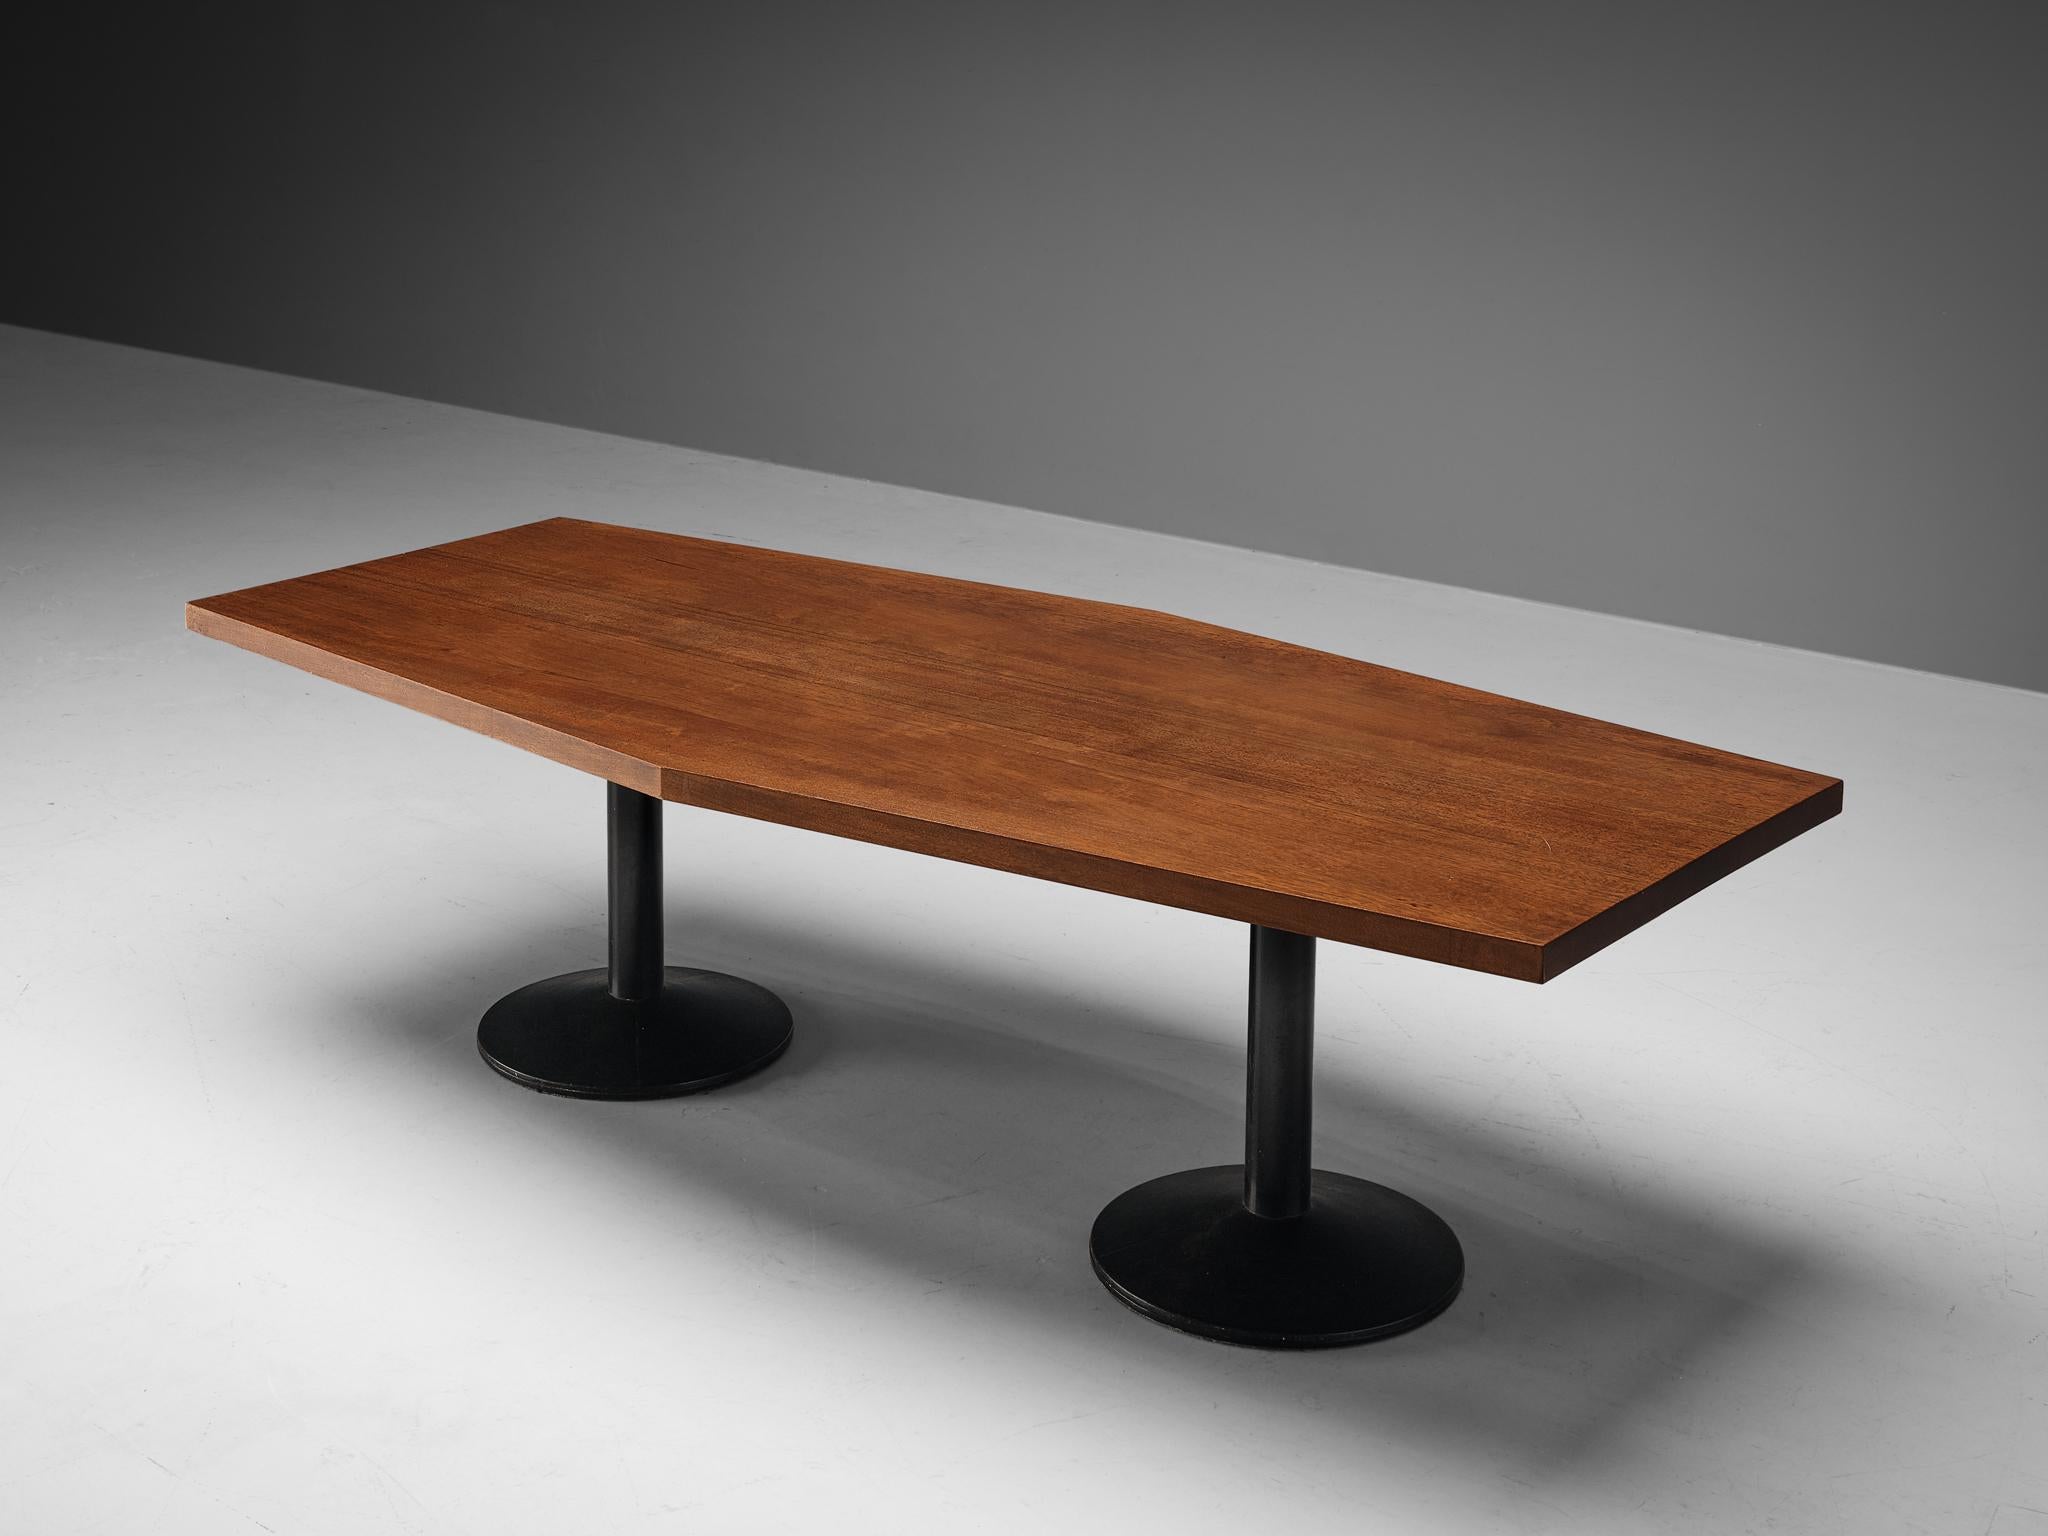 Wim den Boon, table de salle à manger modèle '01-69', acajou massif, métal laqué, Pays-Bas, design 1961

Créée par le designer néerlandais Wim den Boon pour une maison familiale néerlandaise, cette table très bien conçue est exécutée dans une